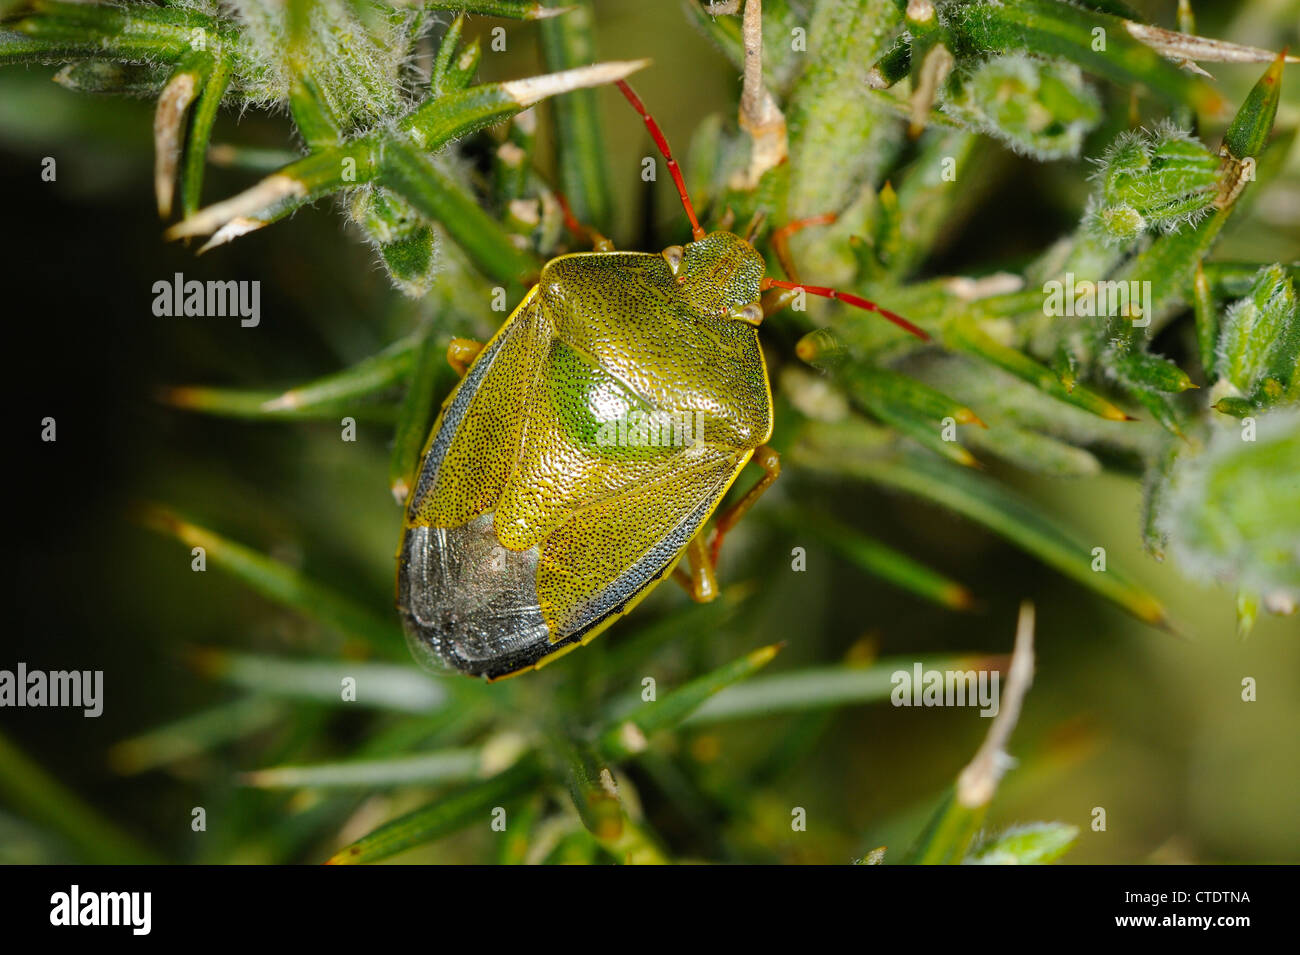 L'ajonc Shield bug, piezodorus lituratus, reposant sur l'Ulex europaeus ajonc commun, landes, zones côtières, North Norfolk, UK, avril Banque D'Images